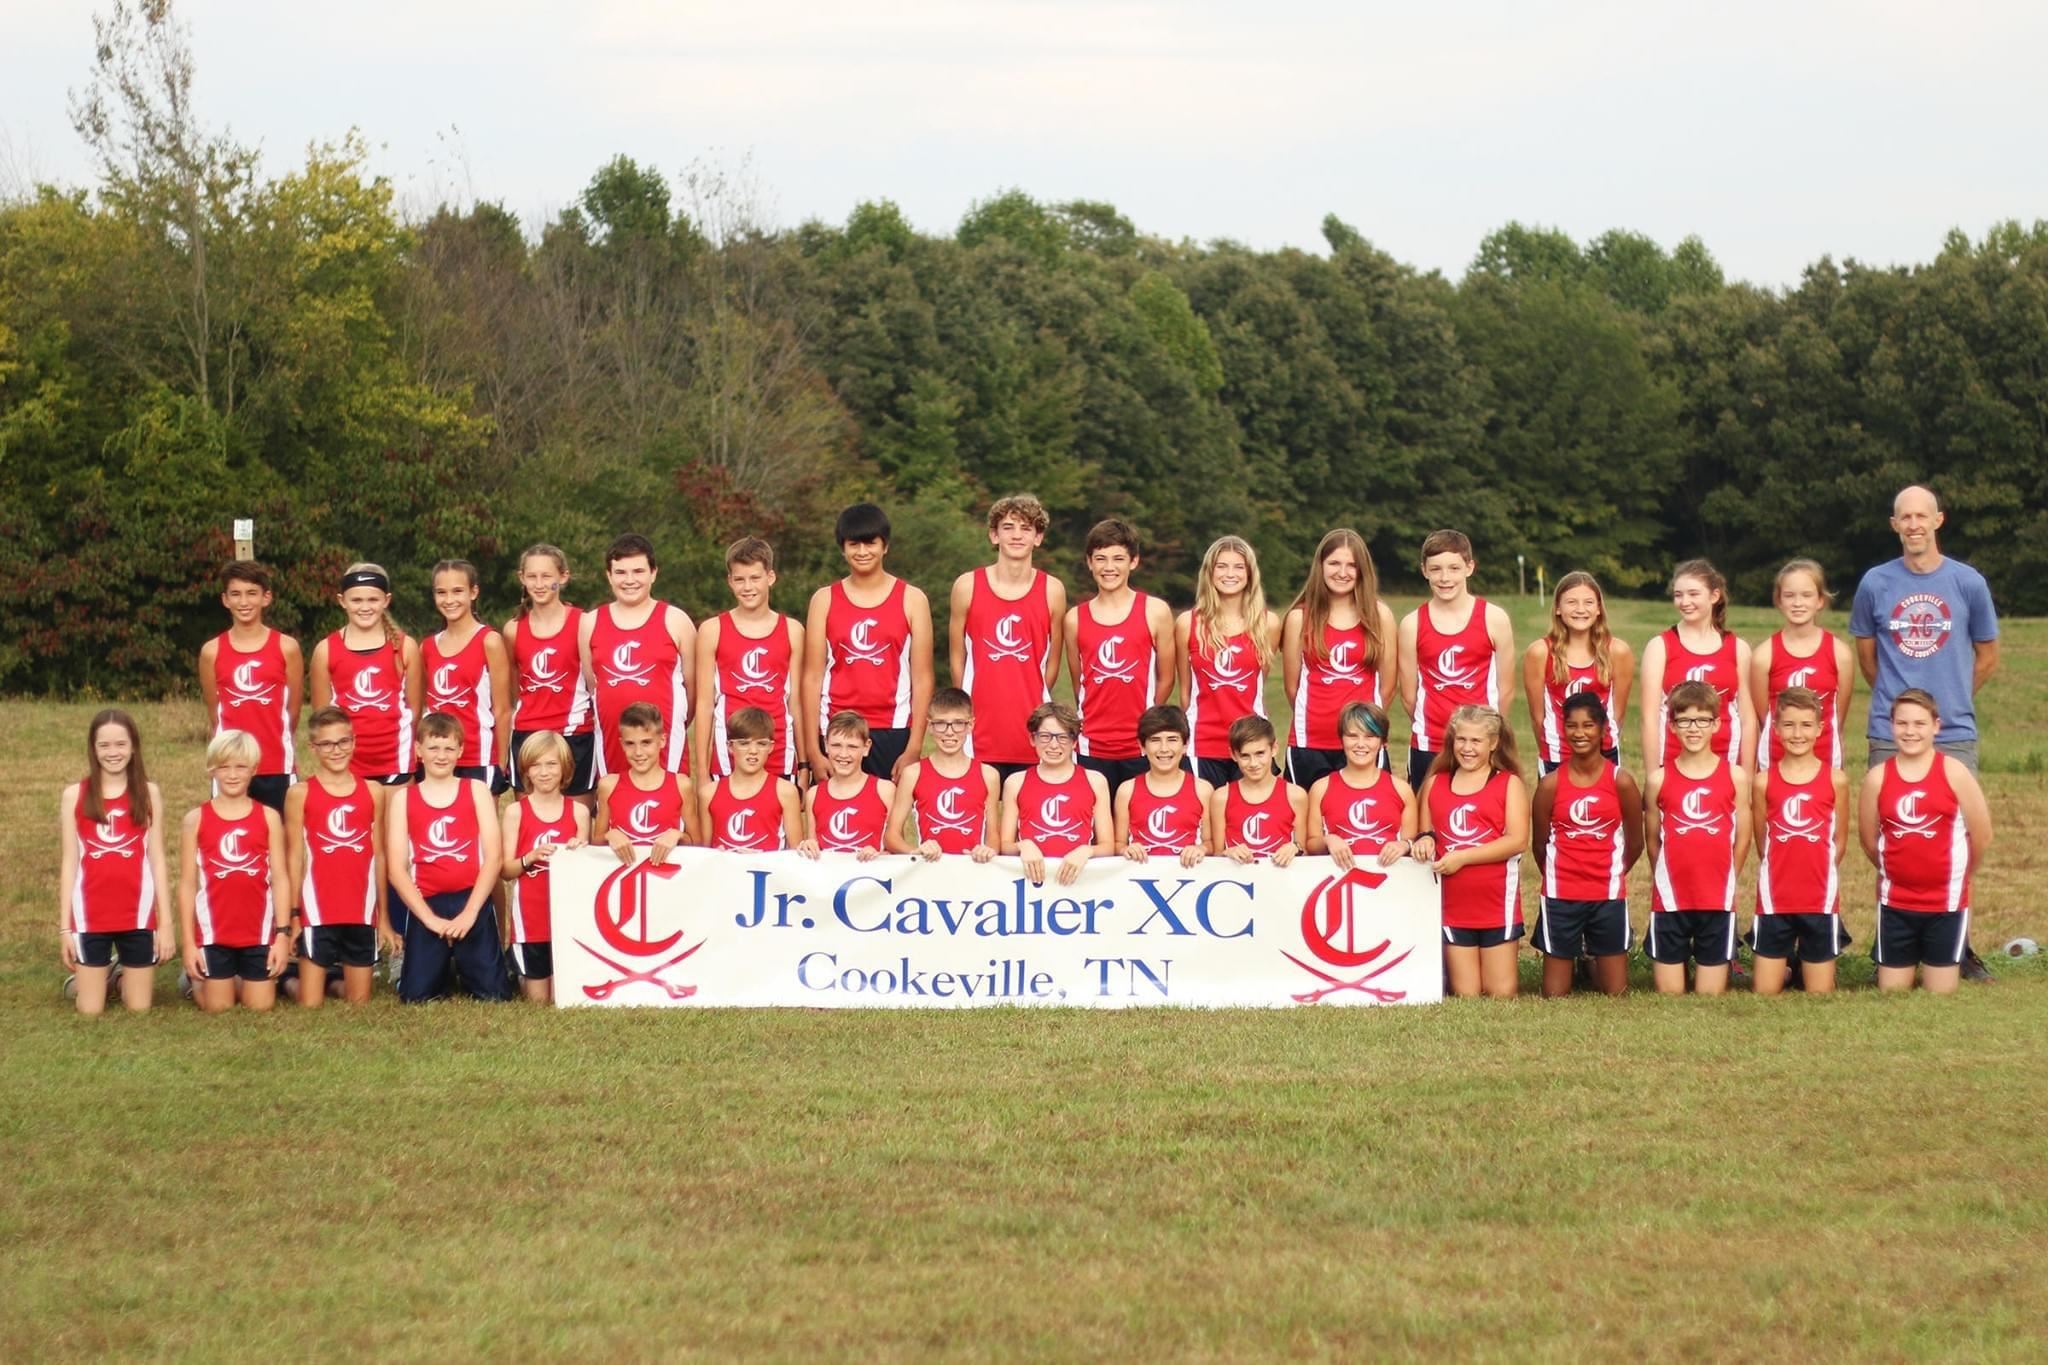 Jr. Cavalier XC. Cookeville, TN